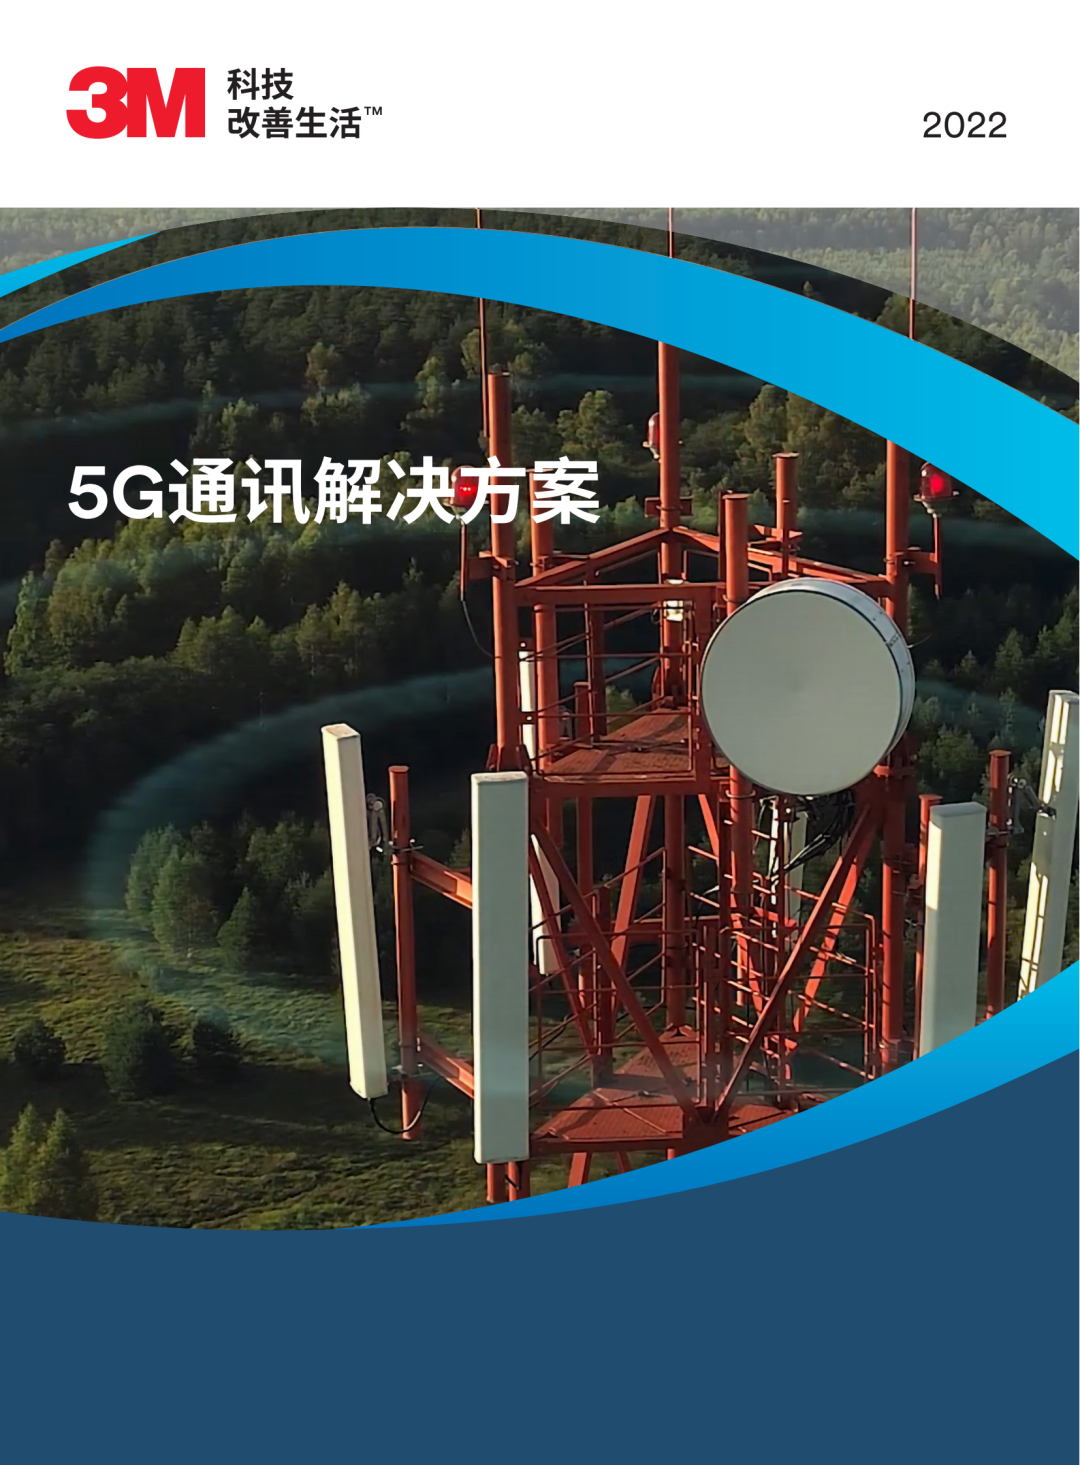 3M 5G通讯解决方案即将亮相2023年第五届 5G 加工产业链展览会